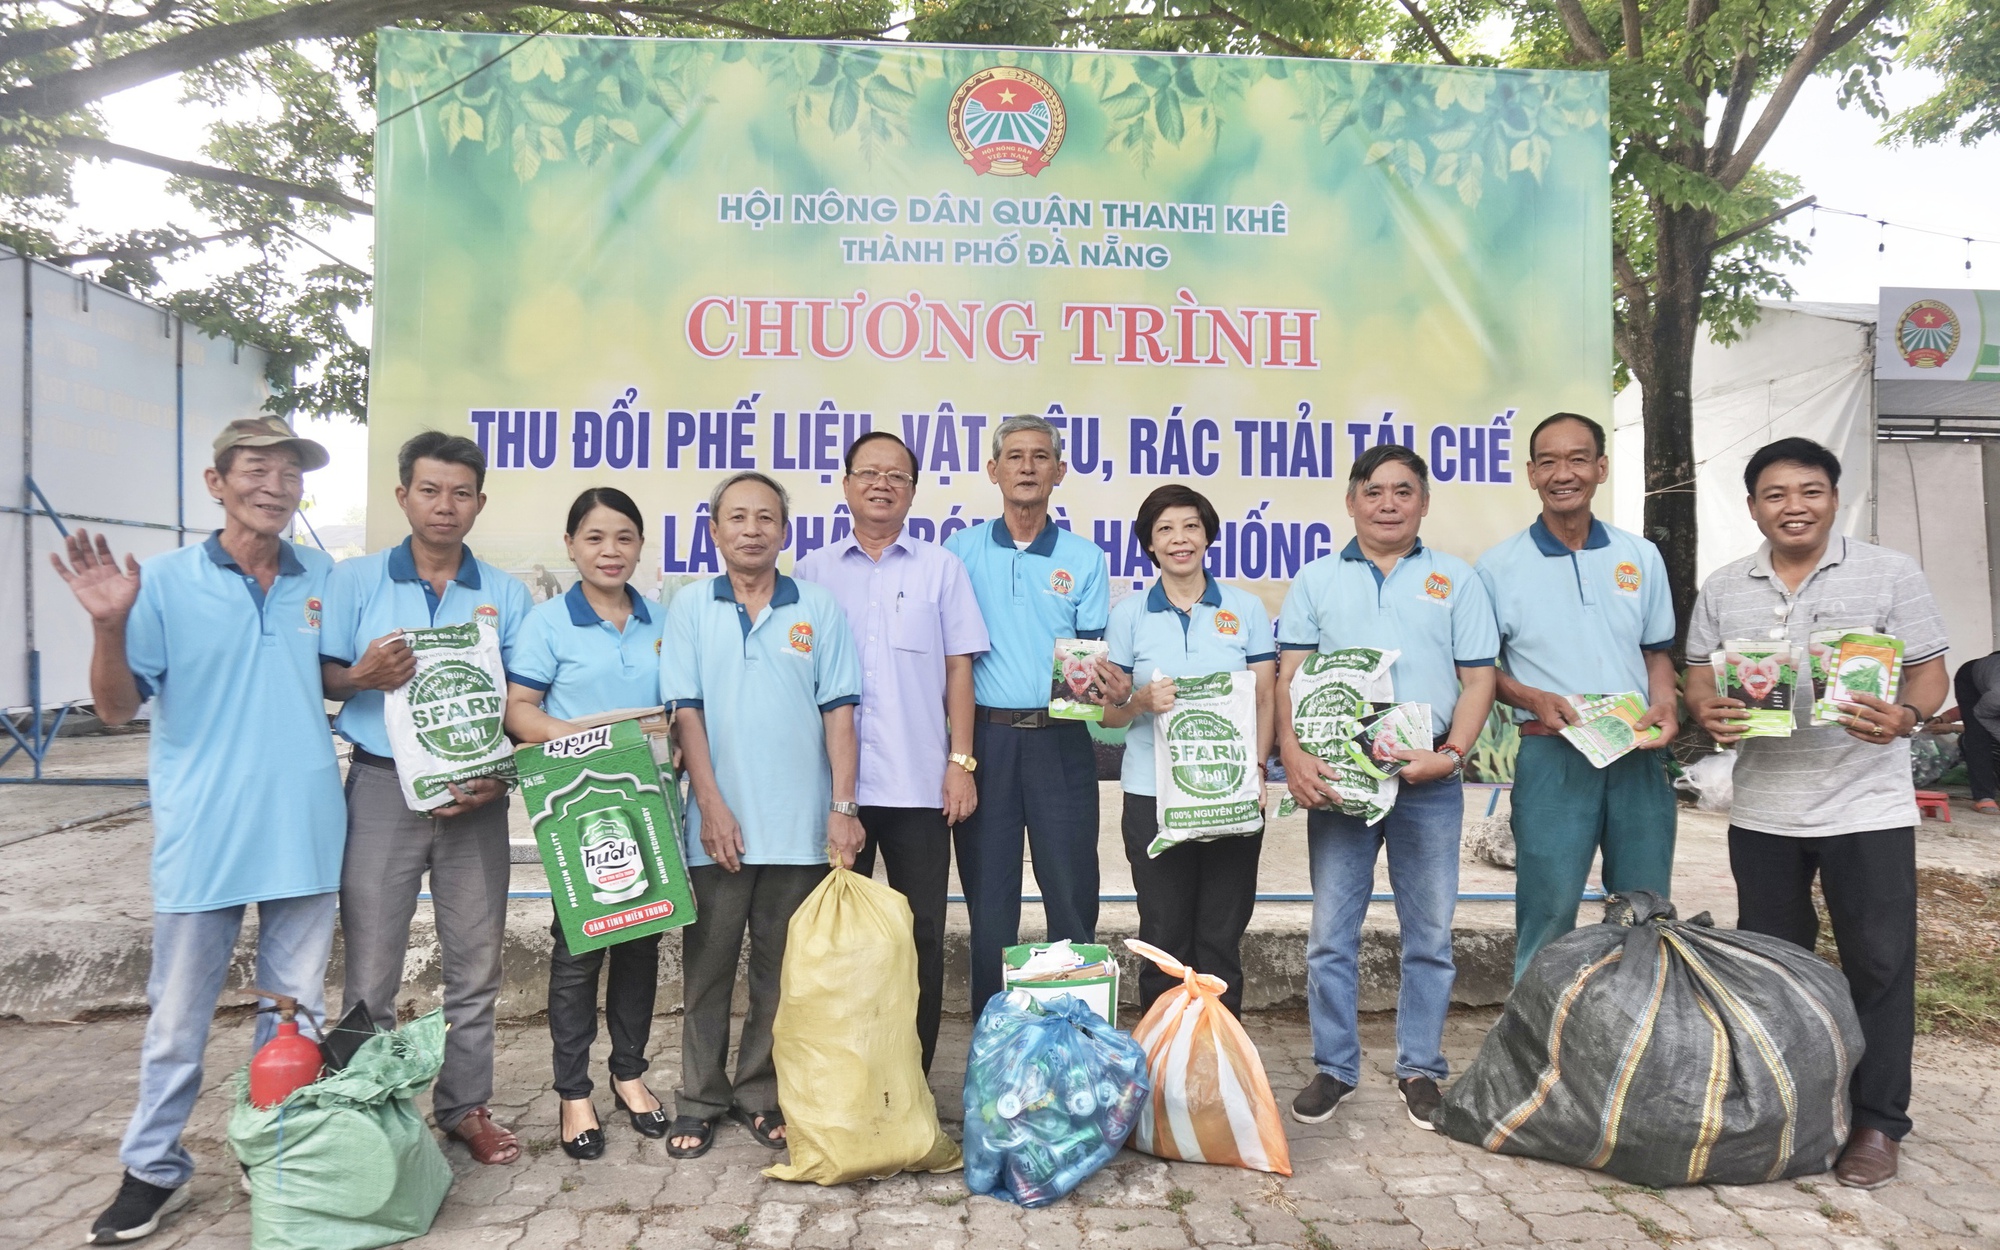 Đổi rác thải lấy loại quà bất ngờ, nông dân Đà Nẵng chung tay bảo vệ môi trường